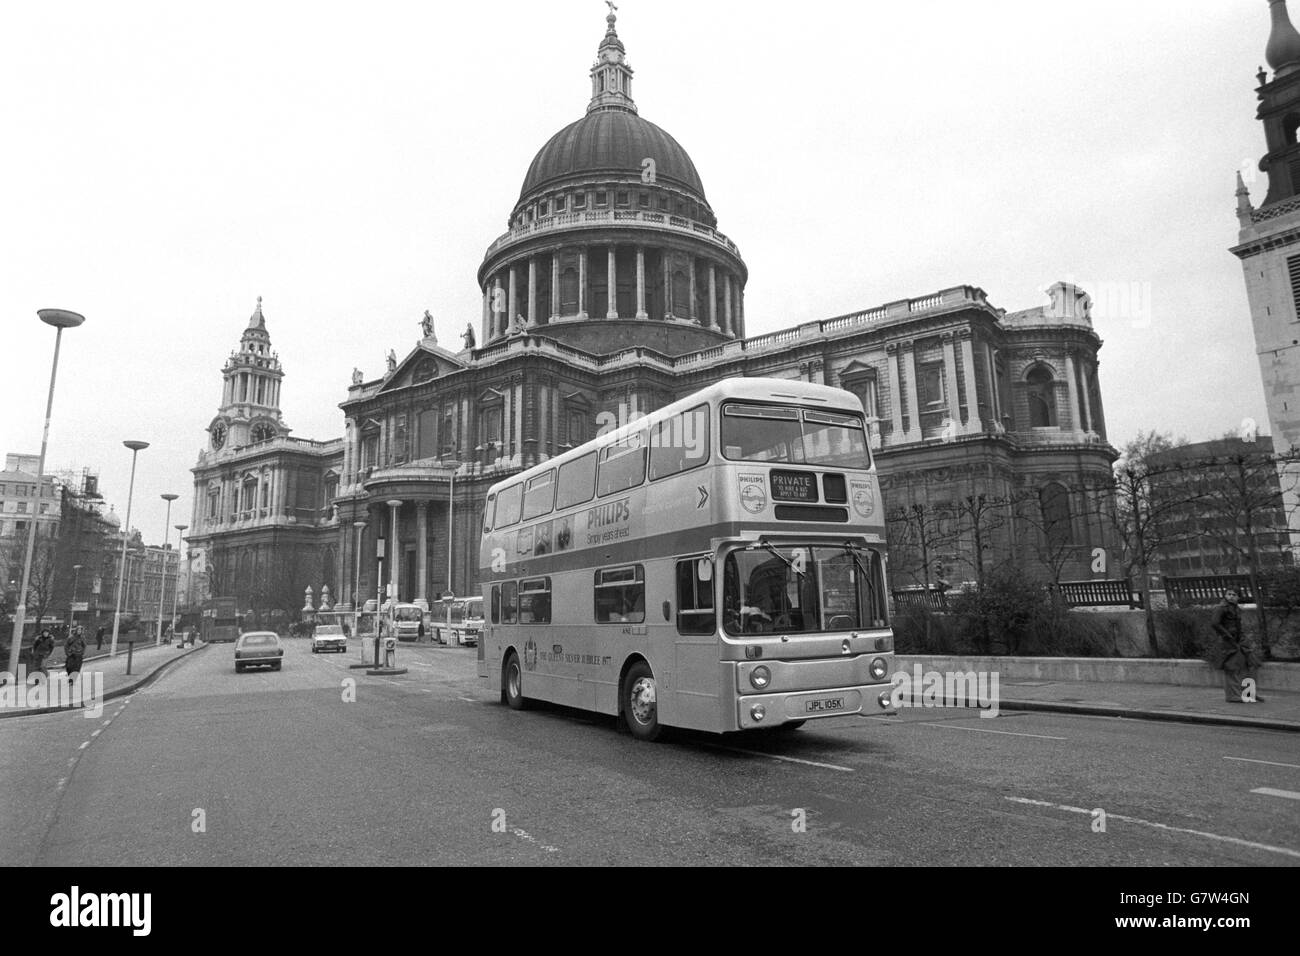 Uno dei 25 autobus di Londra color argento progettati passa davanti alla cattedrale di St. Paul. Gli autobus sono il contributo di London Transport alle celebrazioni del Giubileo d'Argento. Foto Stock